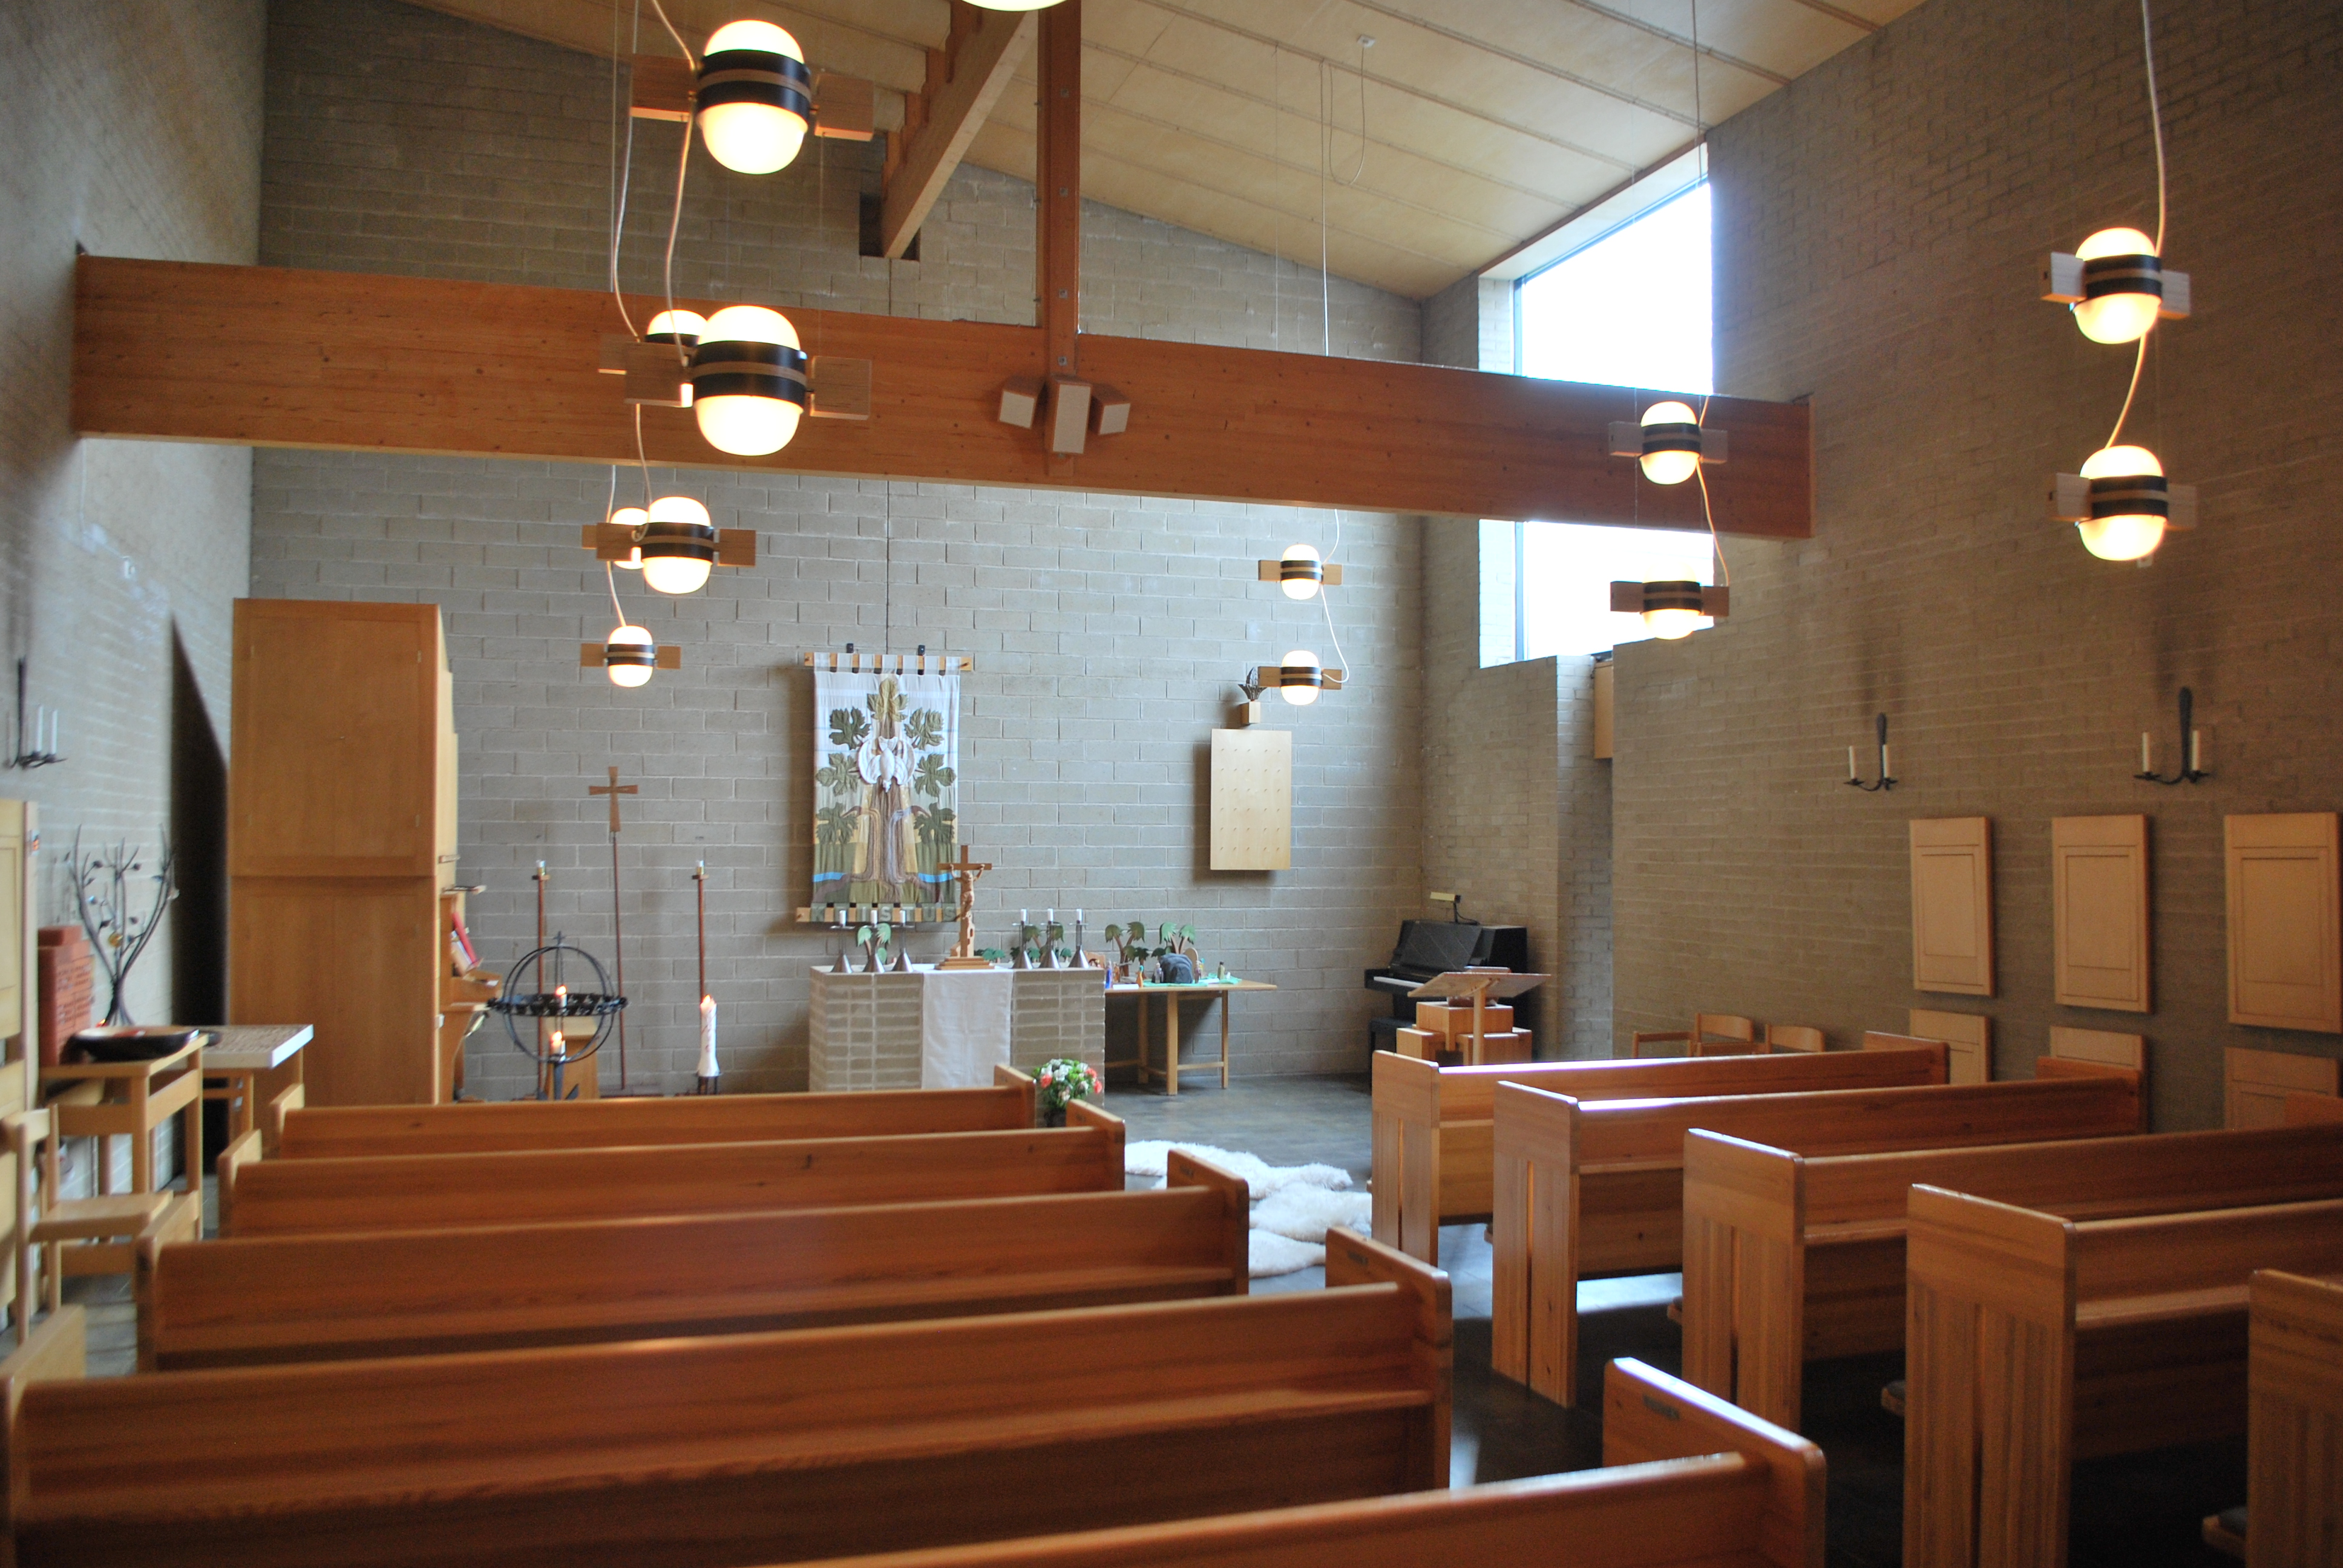 Hylligne småkyrka, kyrkorummet mot altaret i öster